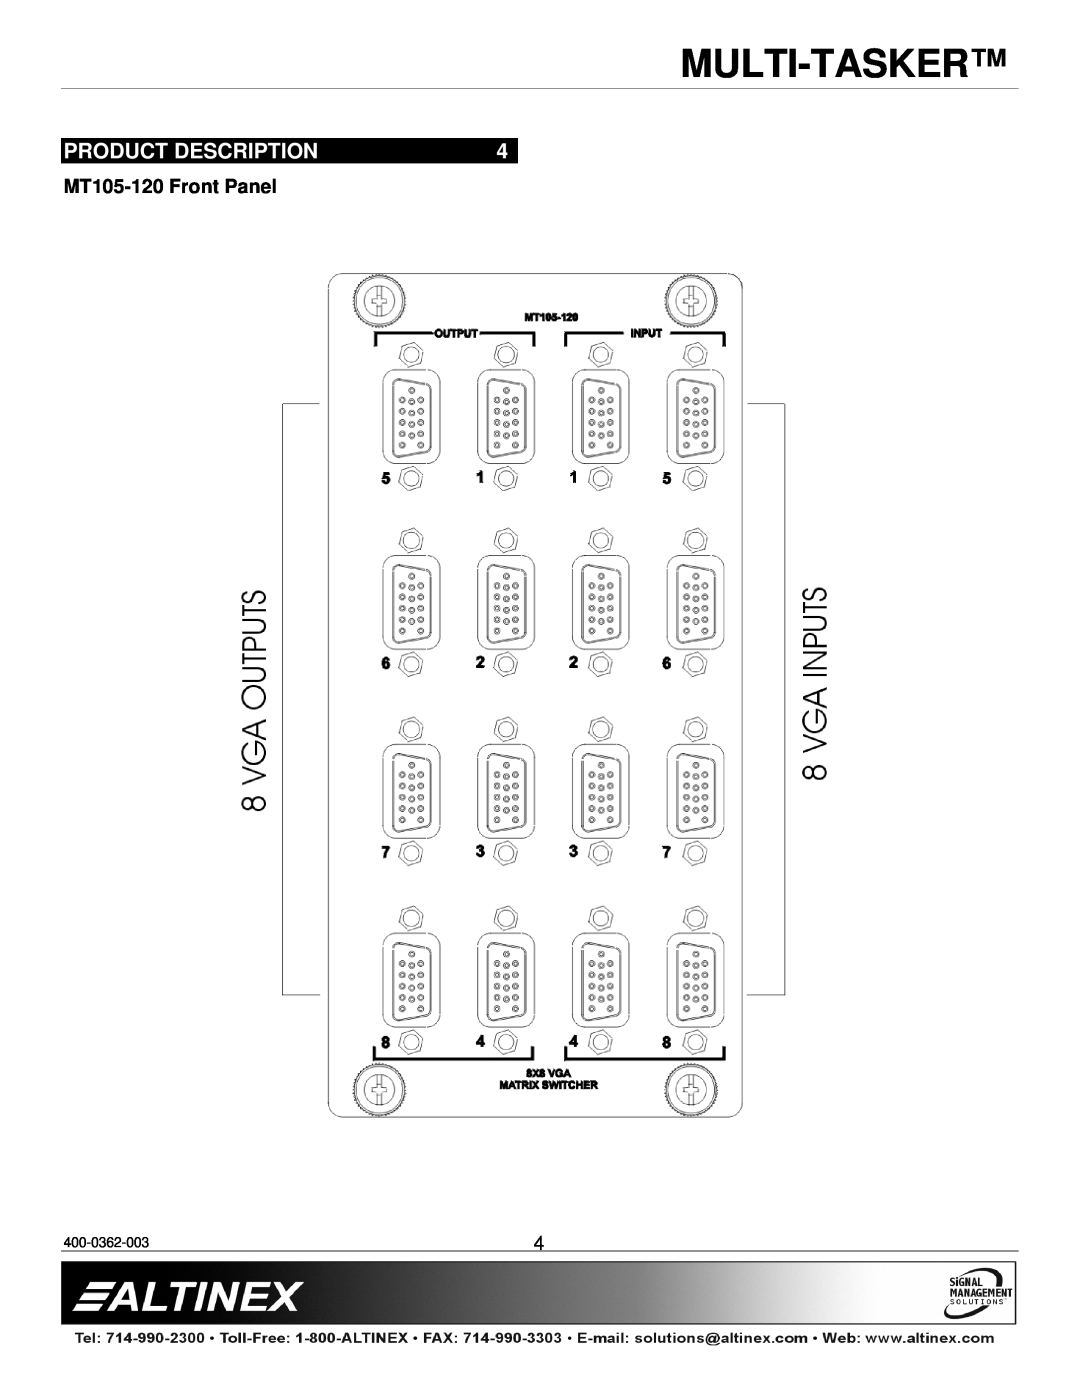 Altinex MT105-120/121 manual Product Description, MT105-120 Front Panel, Multi-Tasker, 400-0362-003 